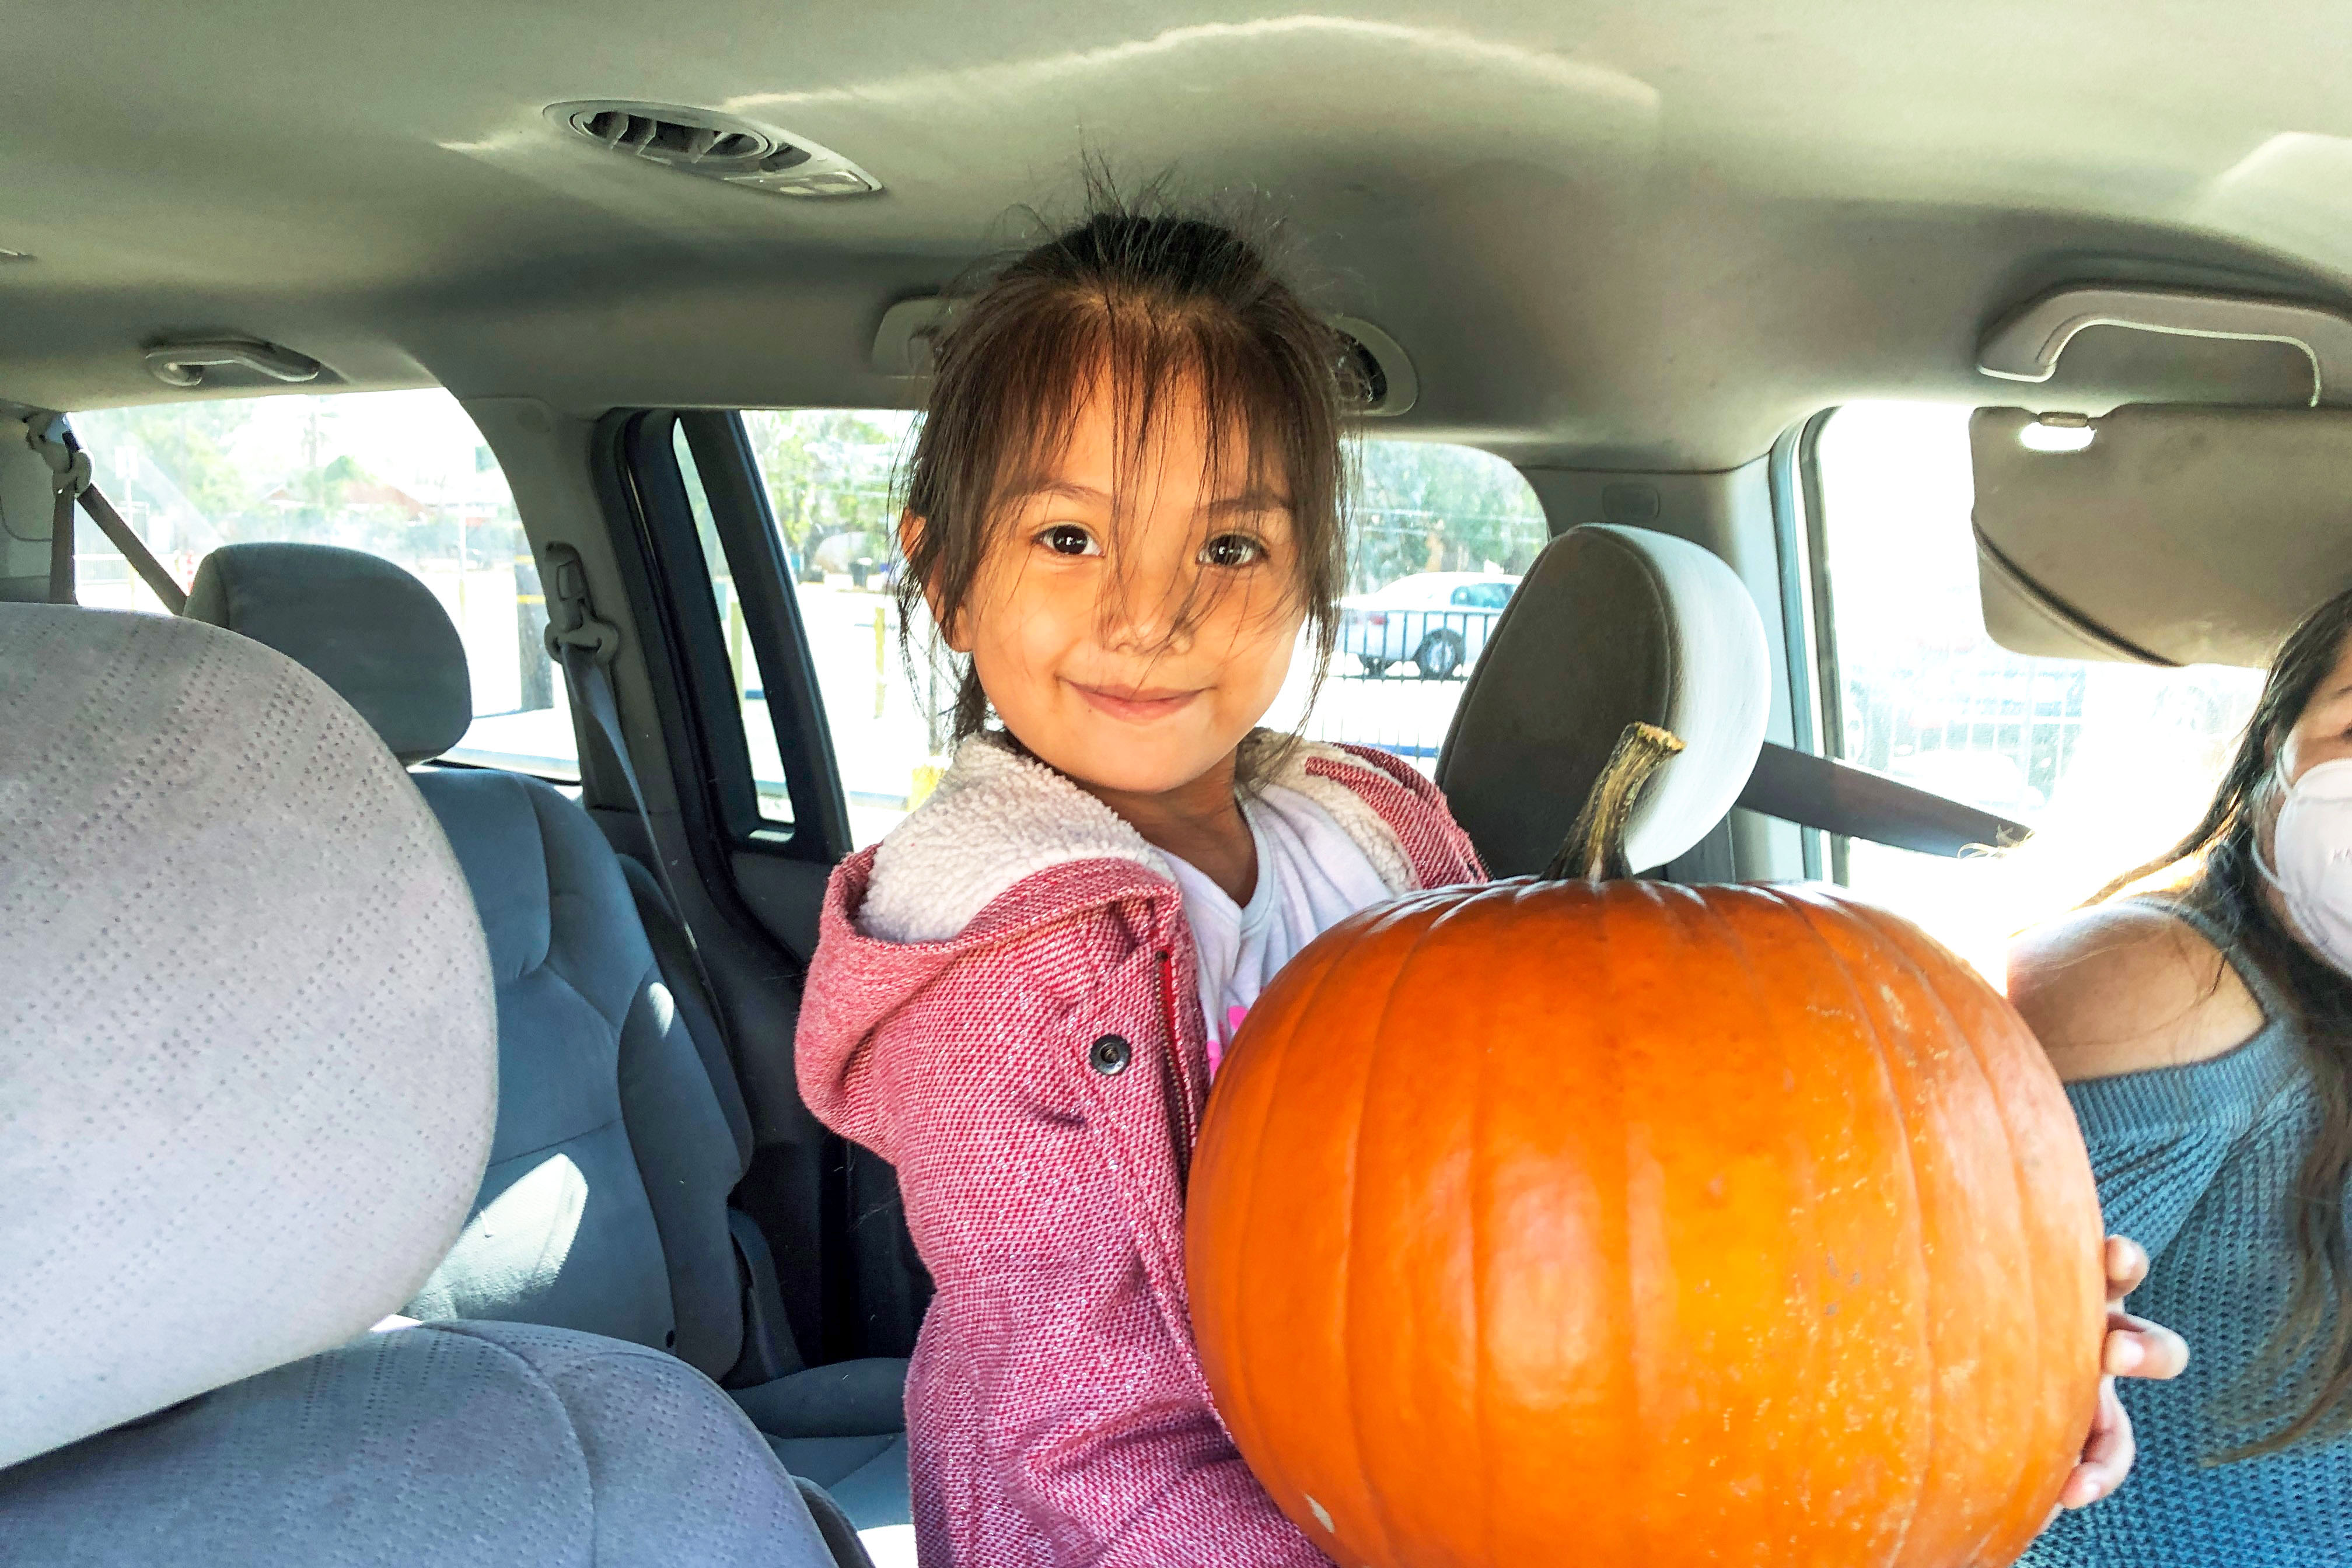 A little girl holds a huge pumpkin